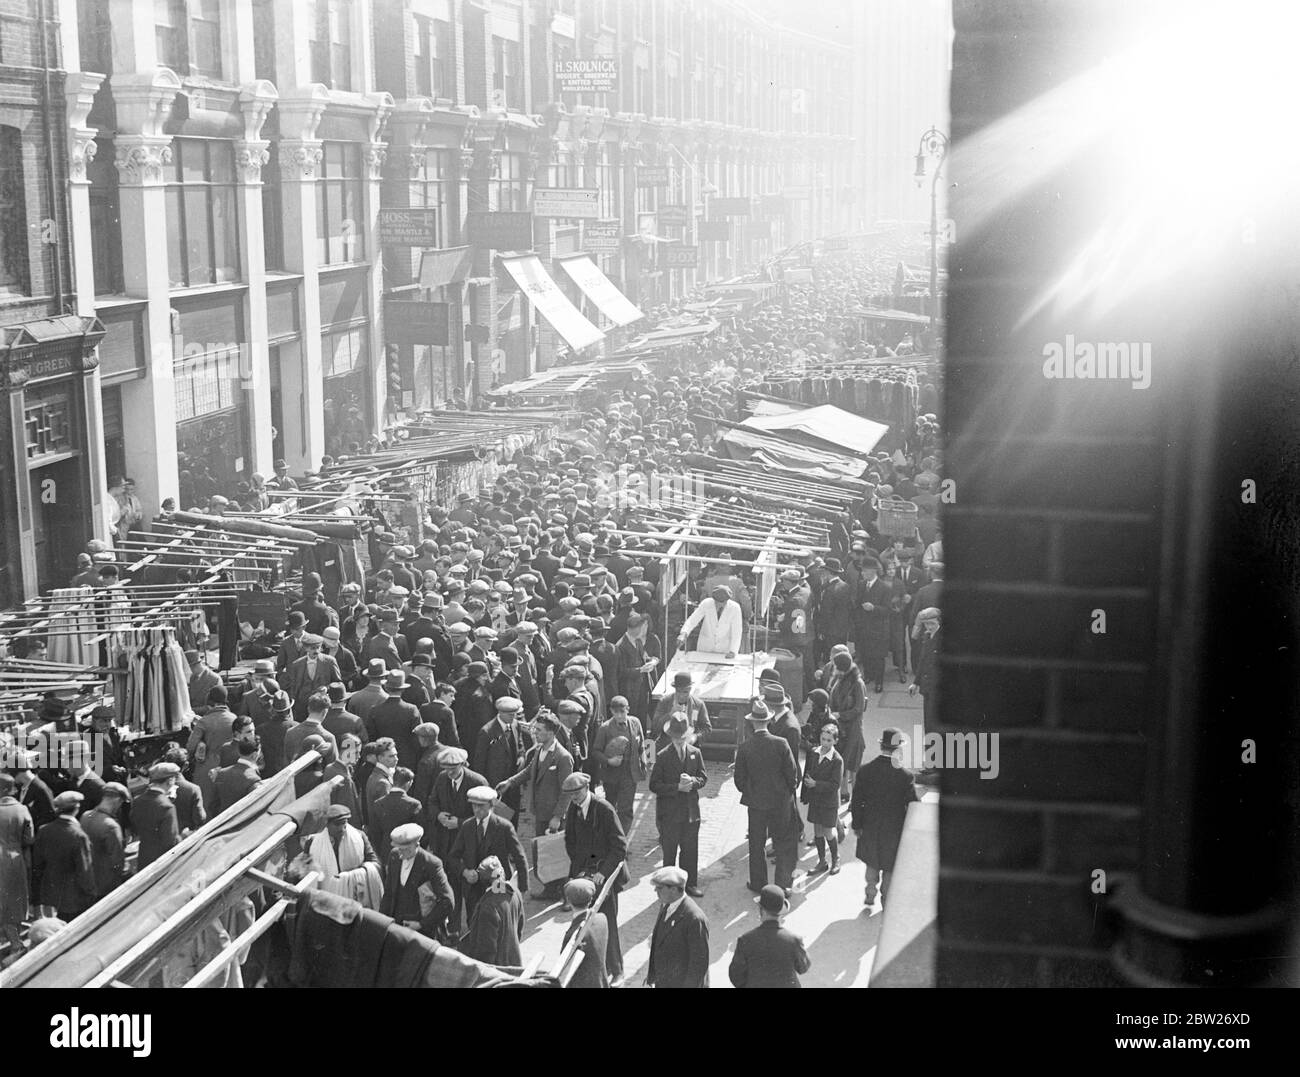 Le marché de la rue des pjucoat regorge de clients et de commerçants. 1933 Banque D'Images